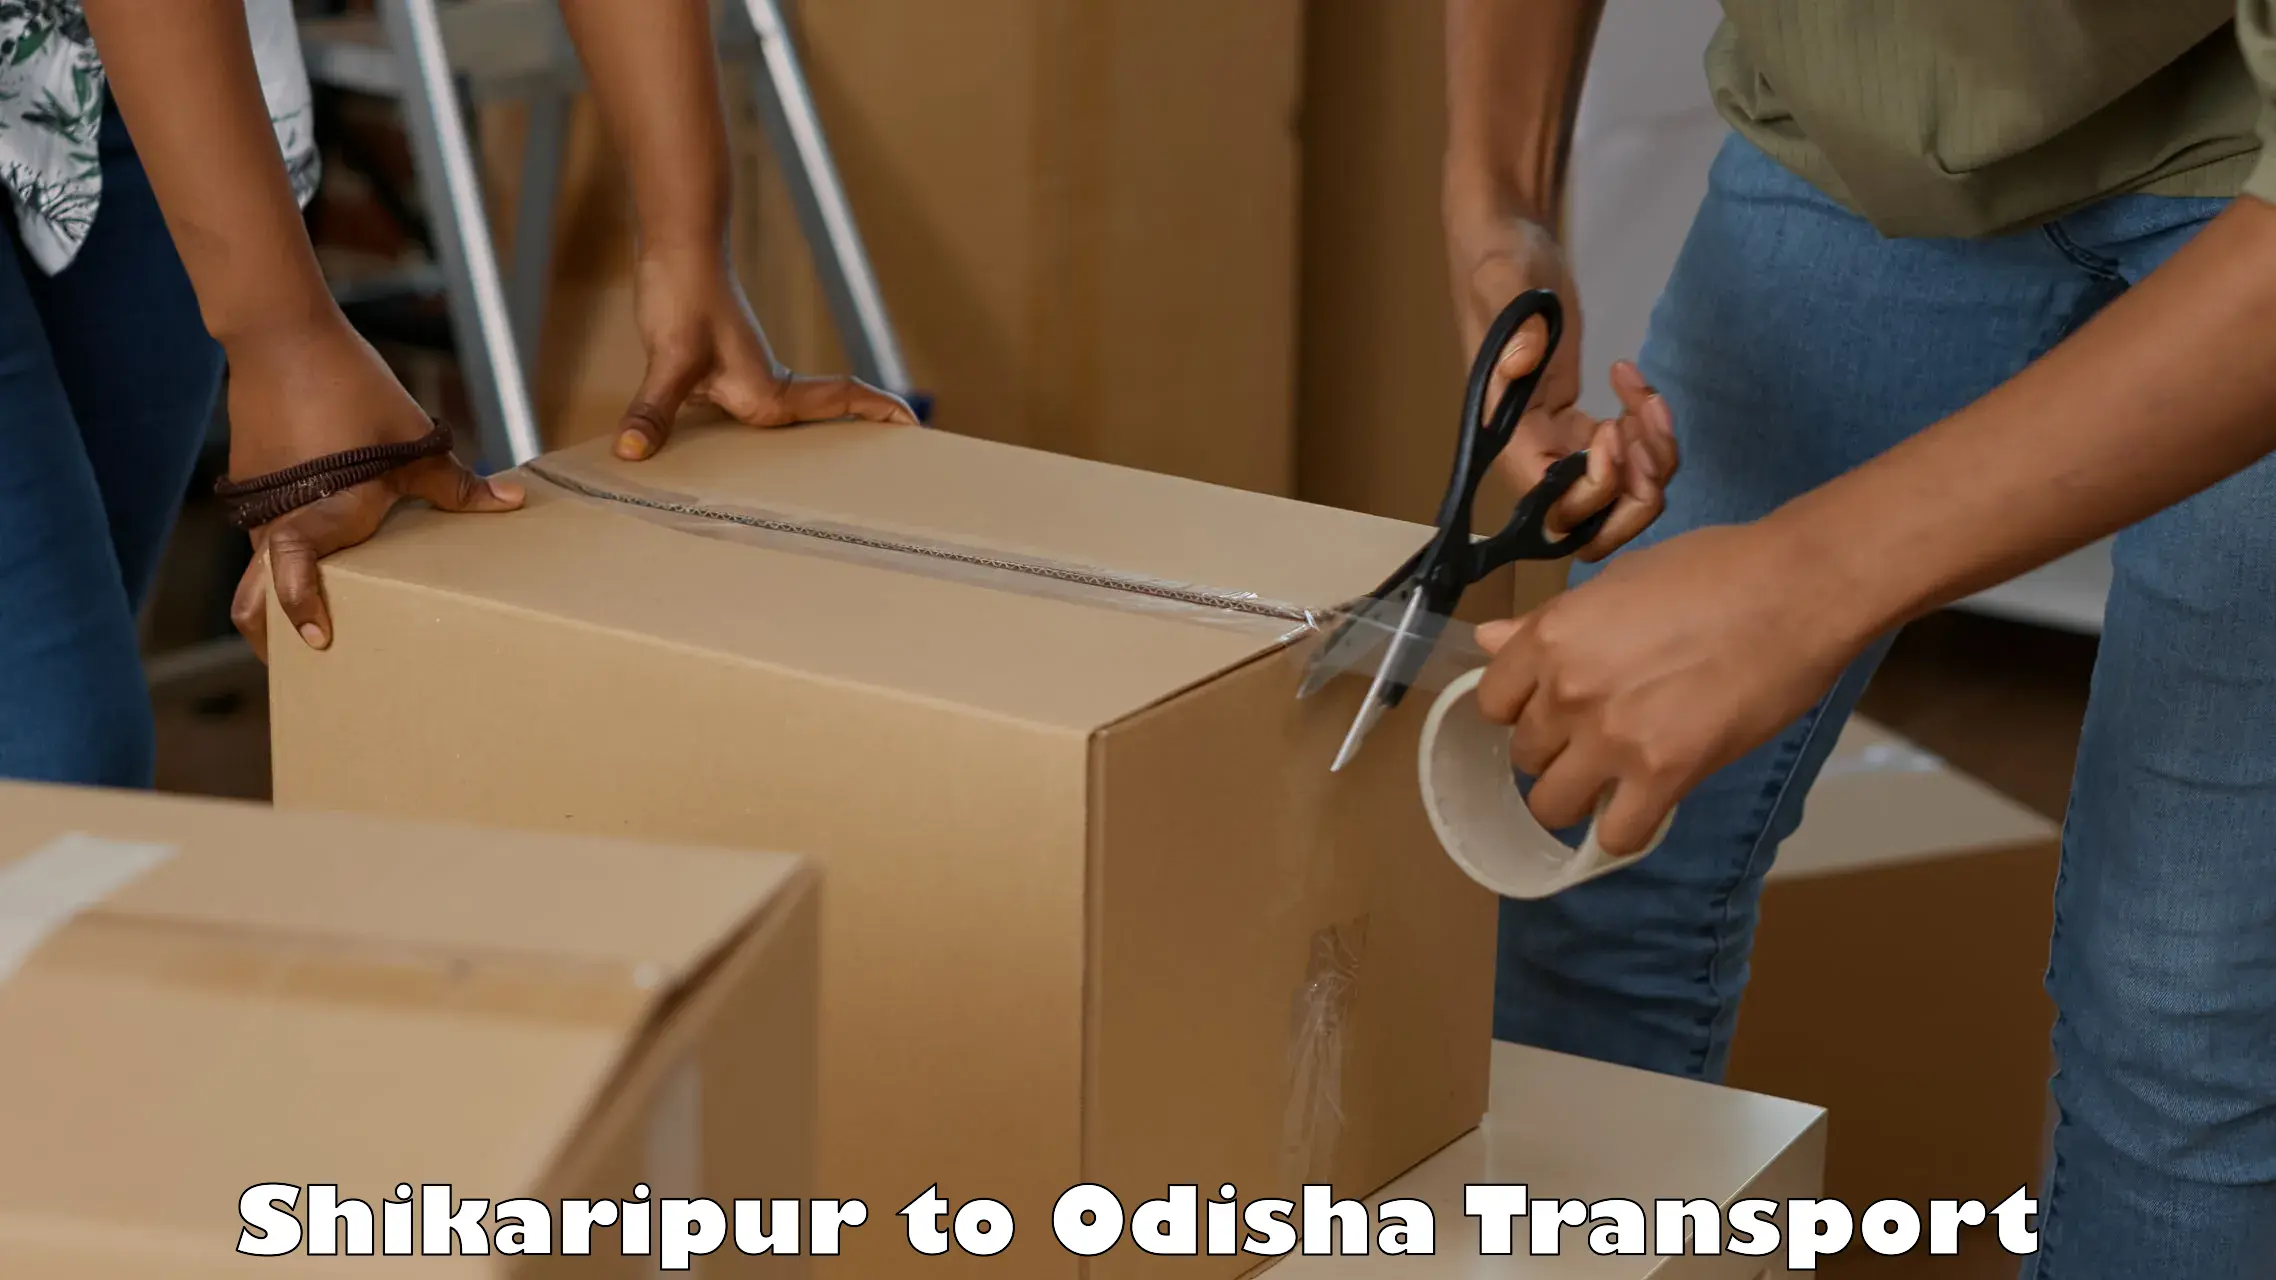 International cargo transportation services Shikaripur to Nirakarpur